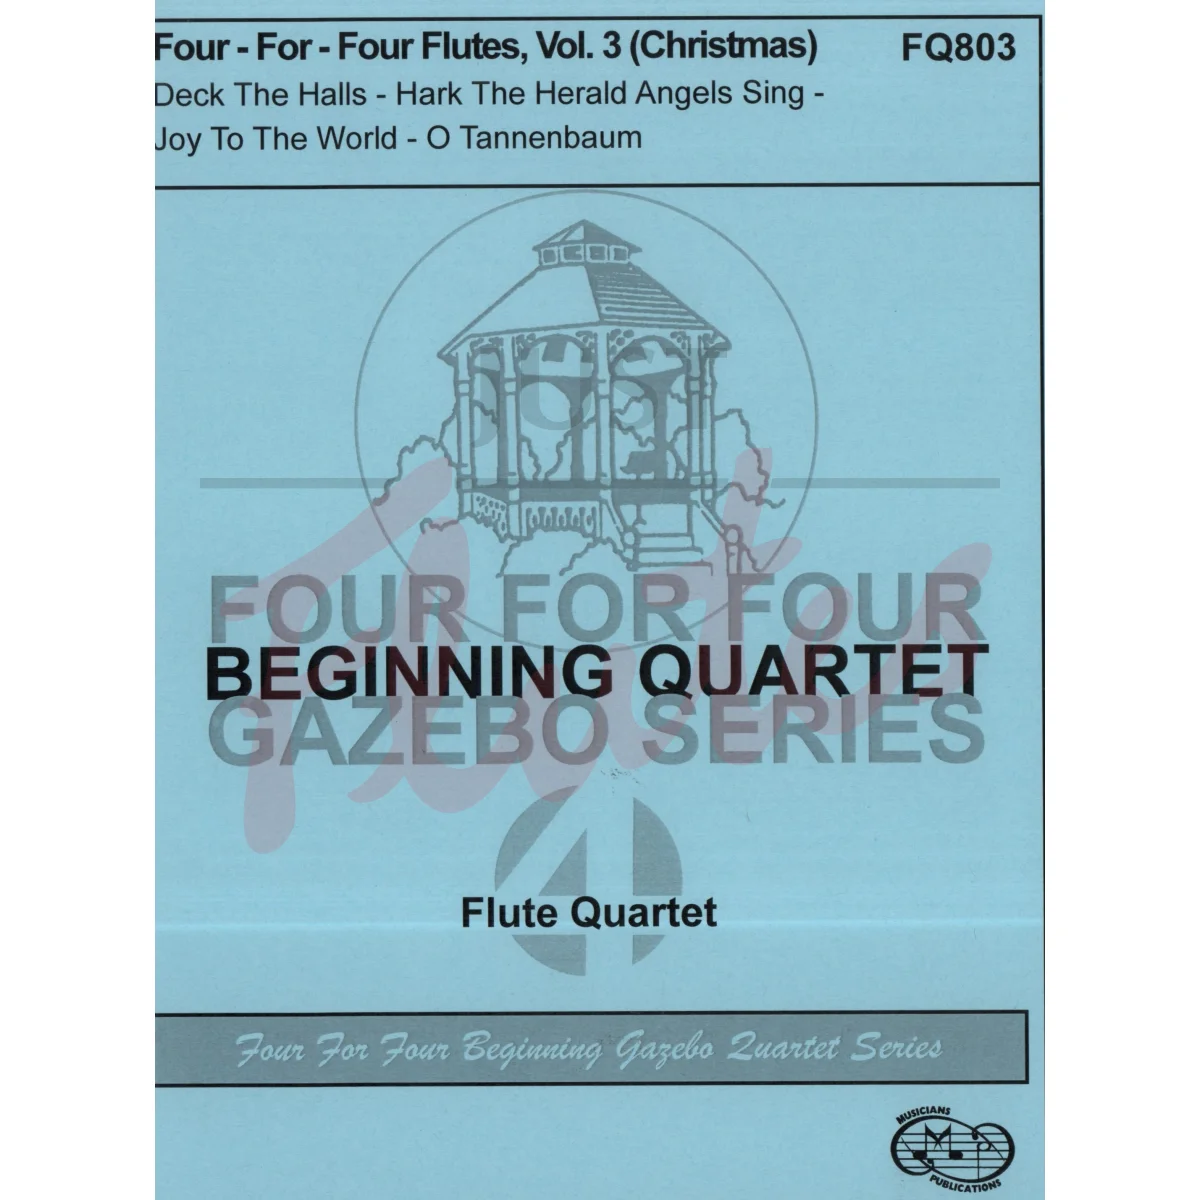 Four-For-Four Flutes, Vol 3: Christmas